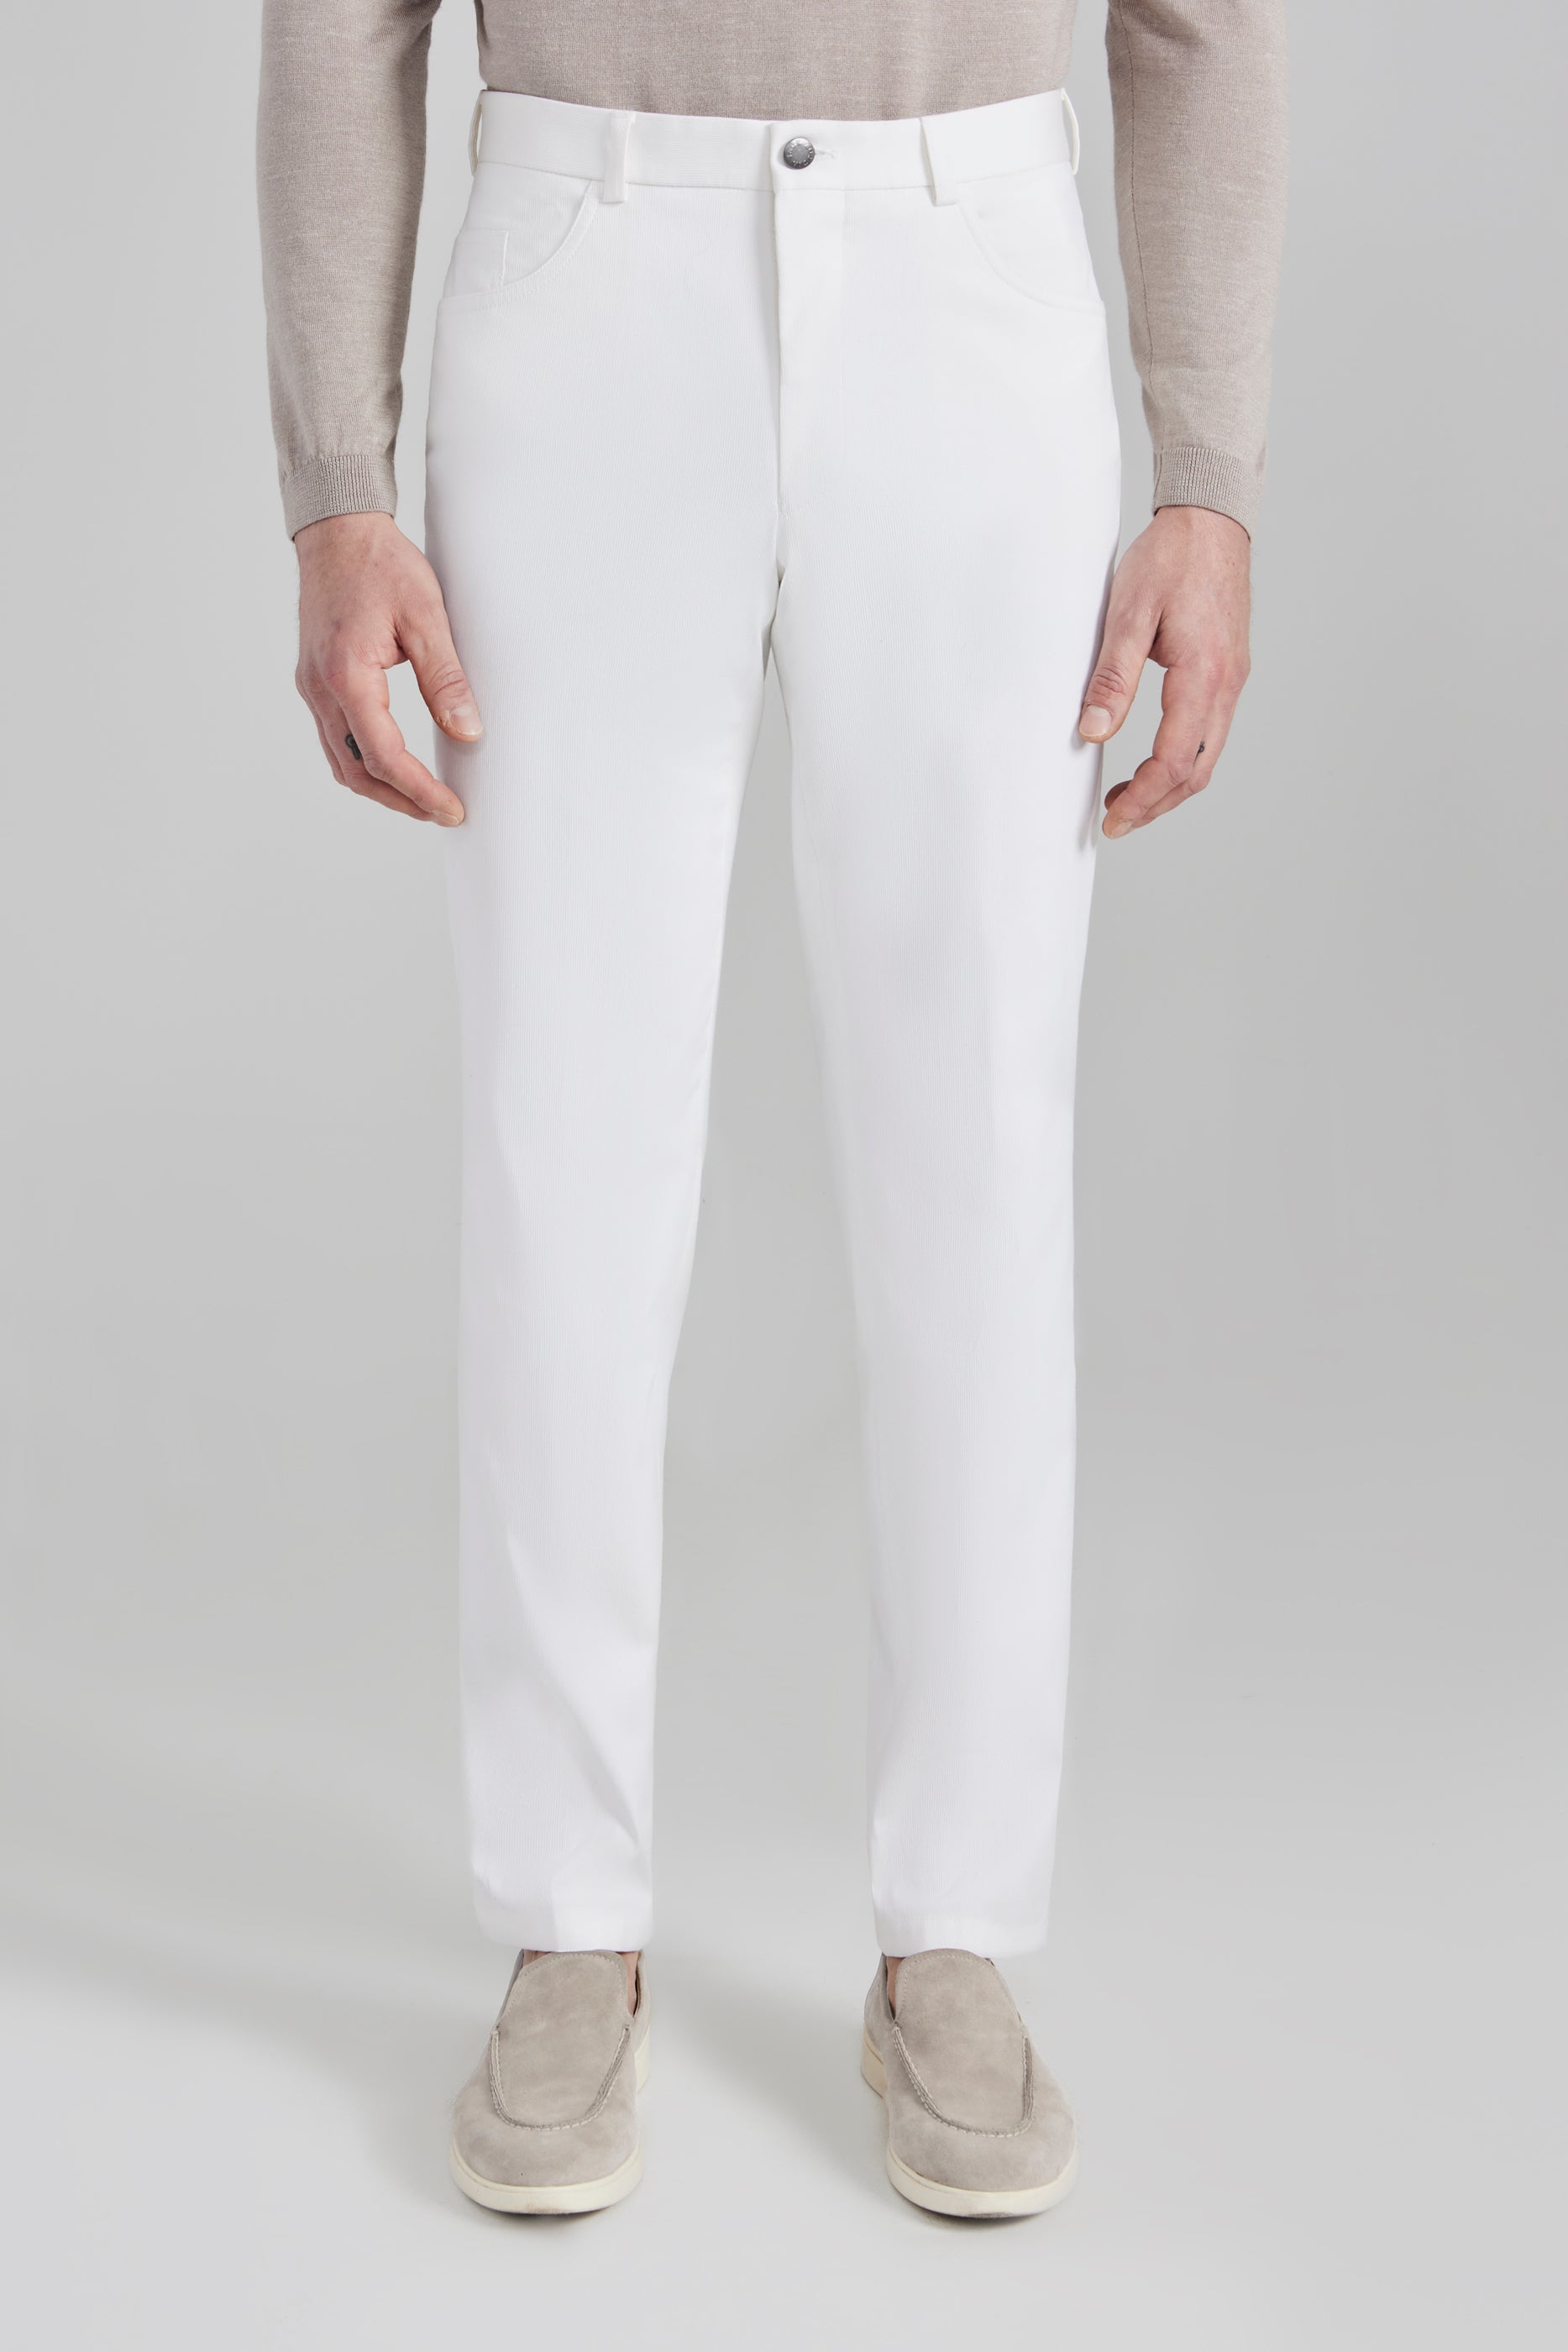 Vue alternative Pantalon en coton extensible 5 poches en plumes d'épingle blanc Sage